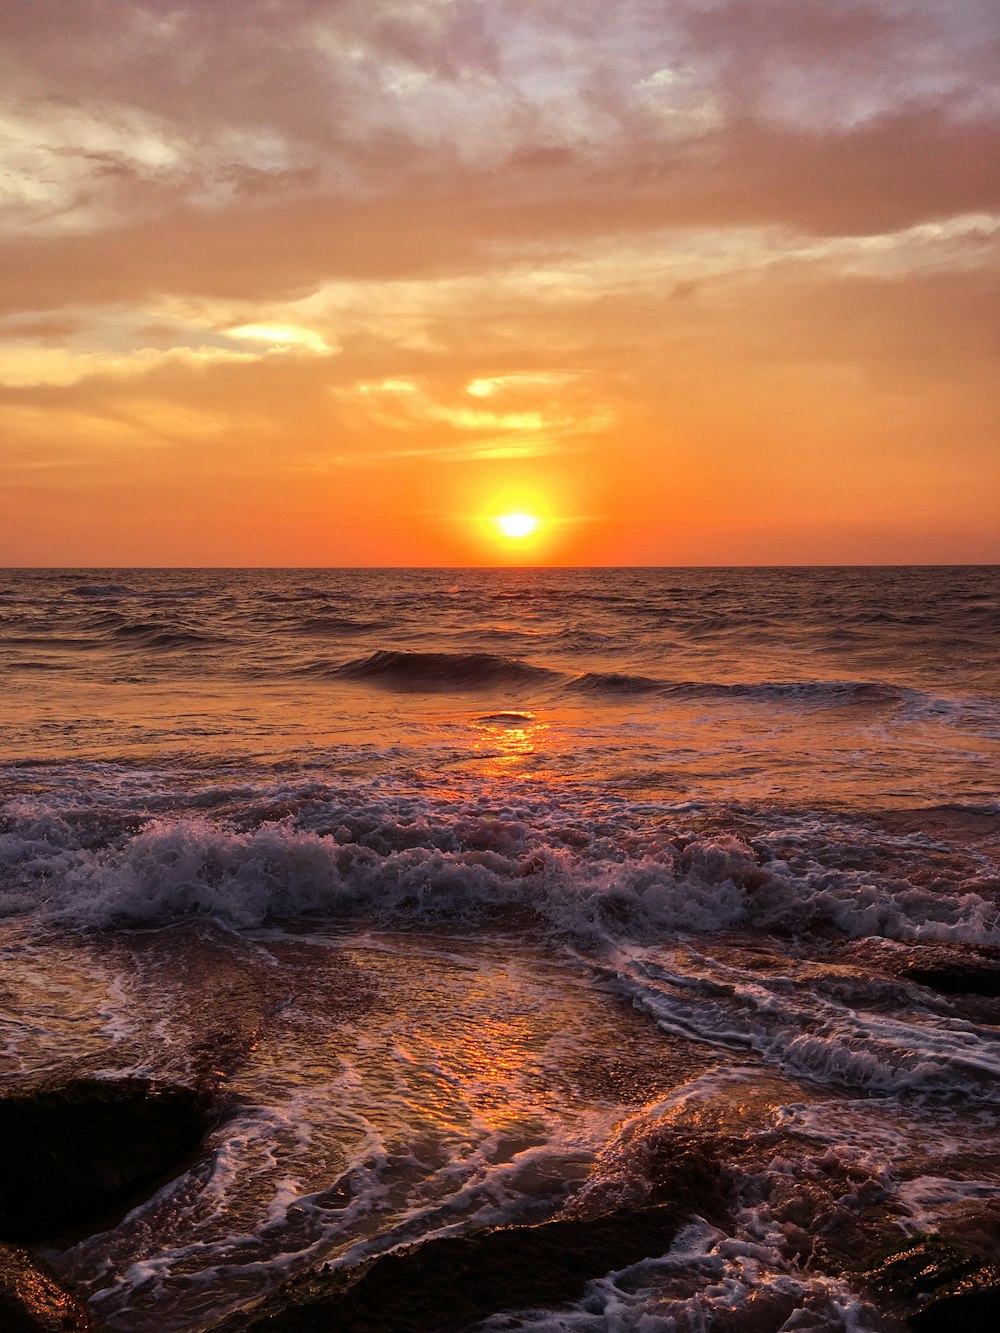 mare calmo alla vista del tramonto